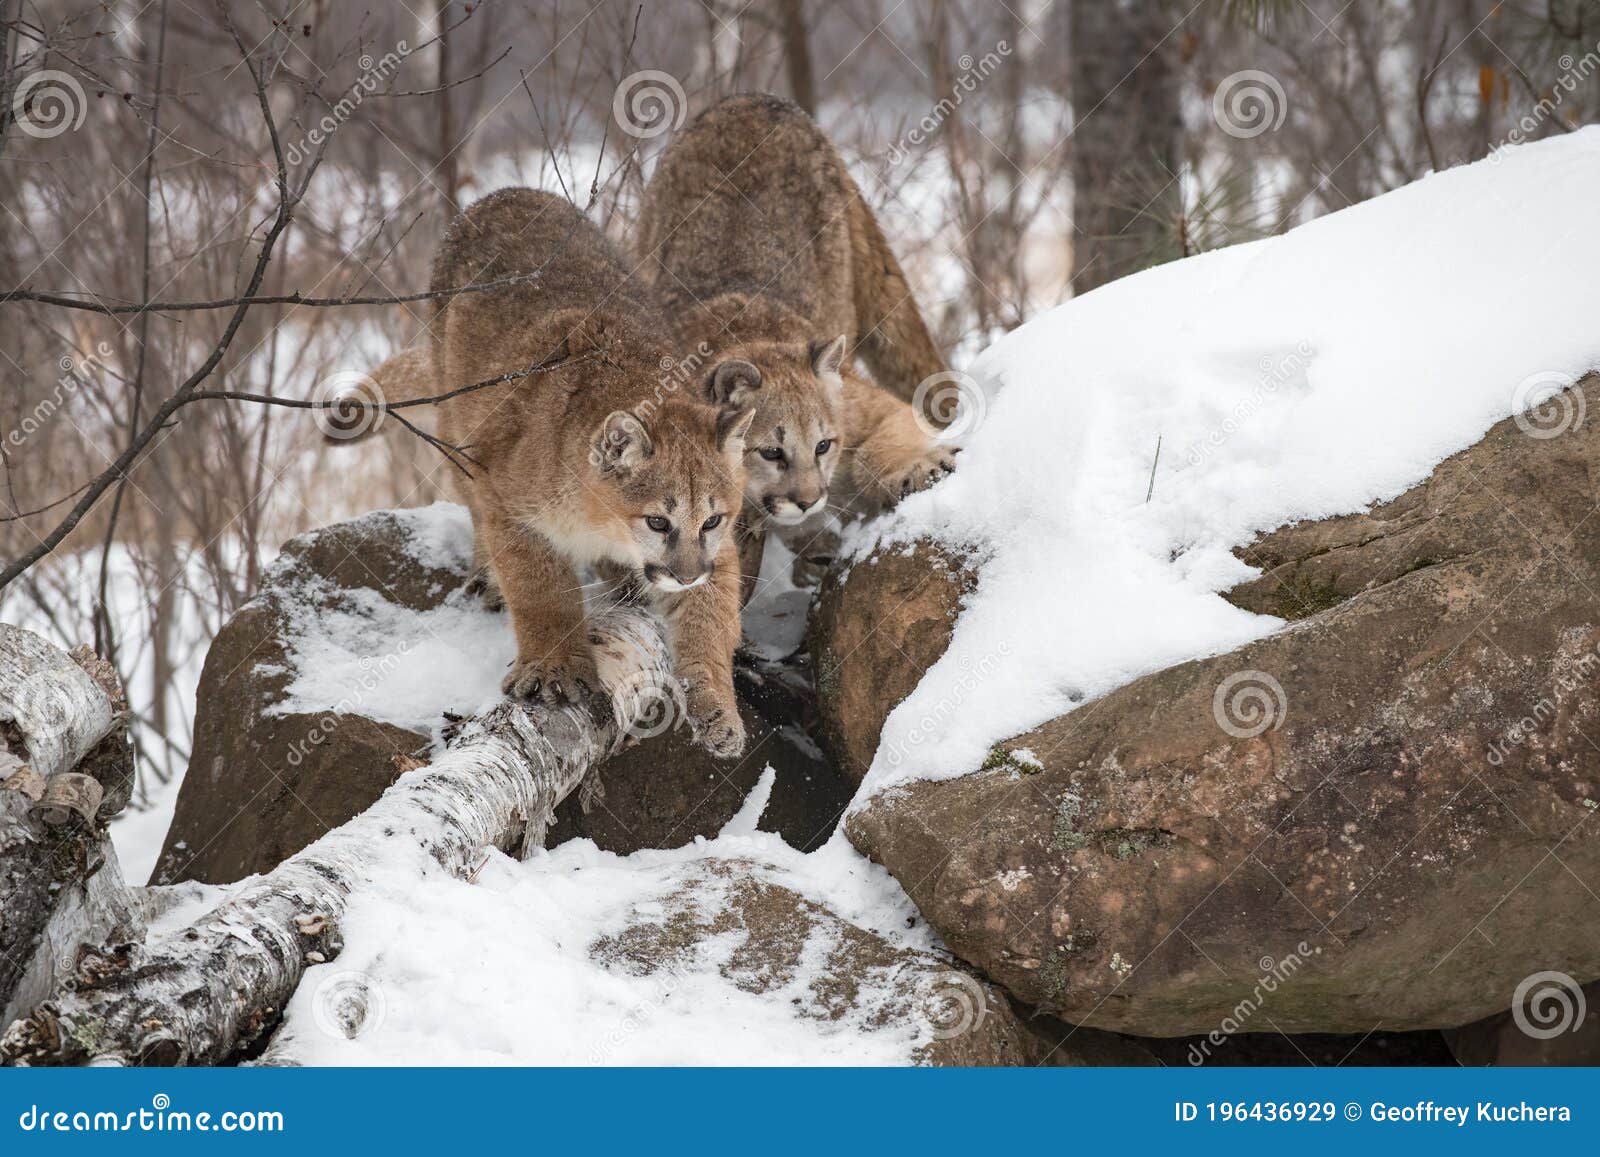 Cougars Mujeres Puma Concolor Bajan La Cara Del Invierno De Rock de - Imagen de invierno, puma: 196436929